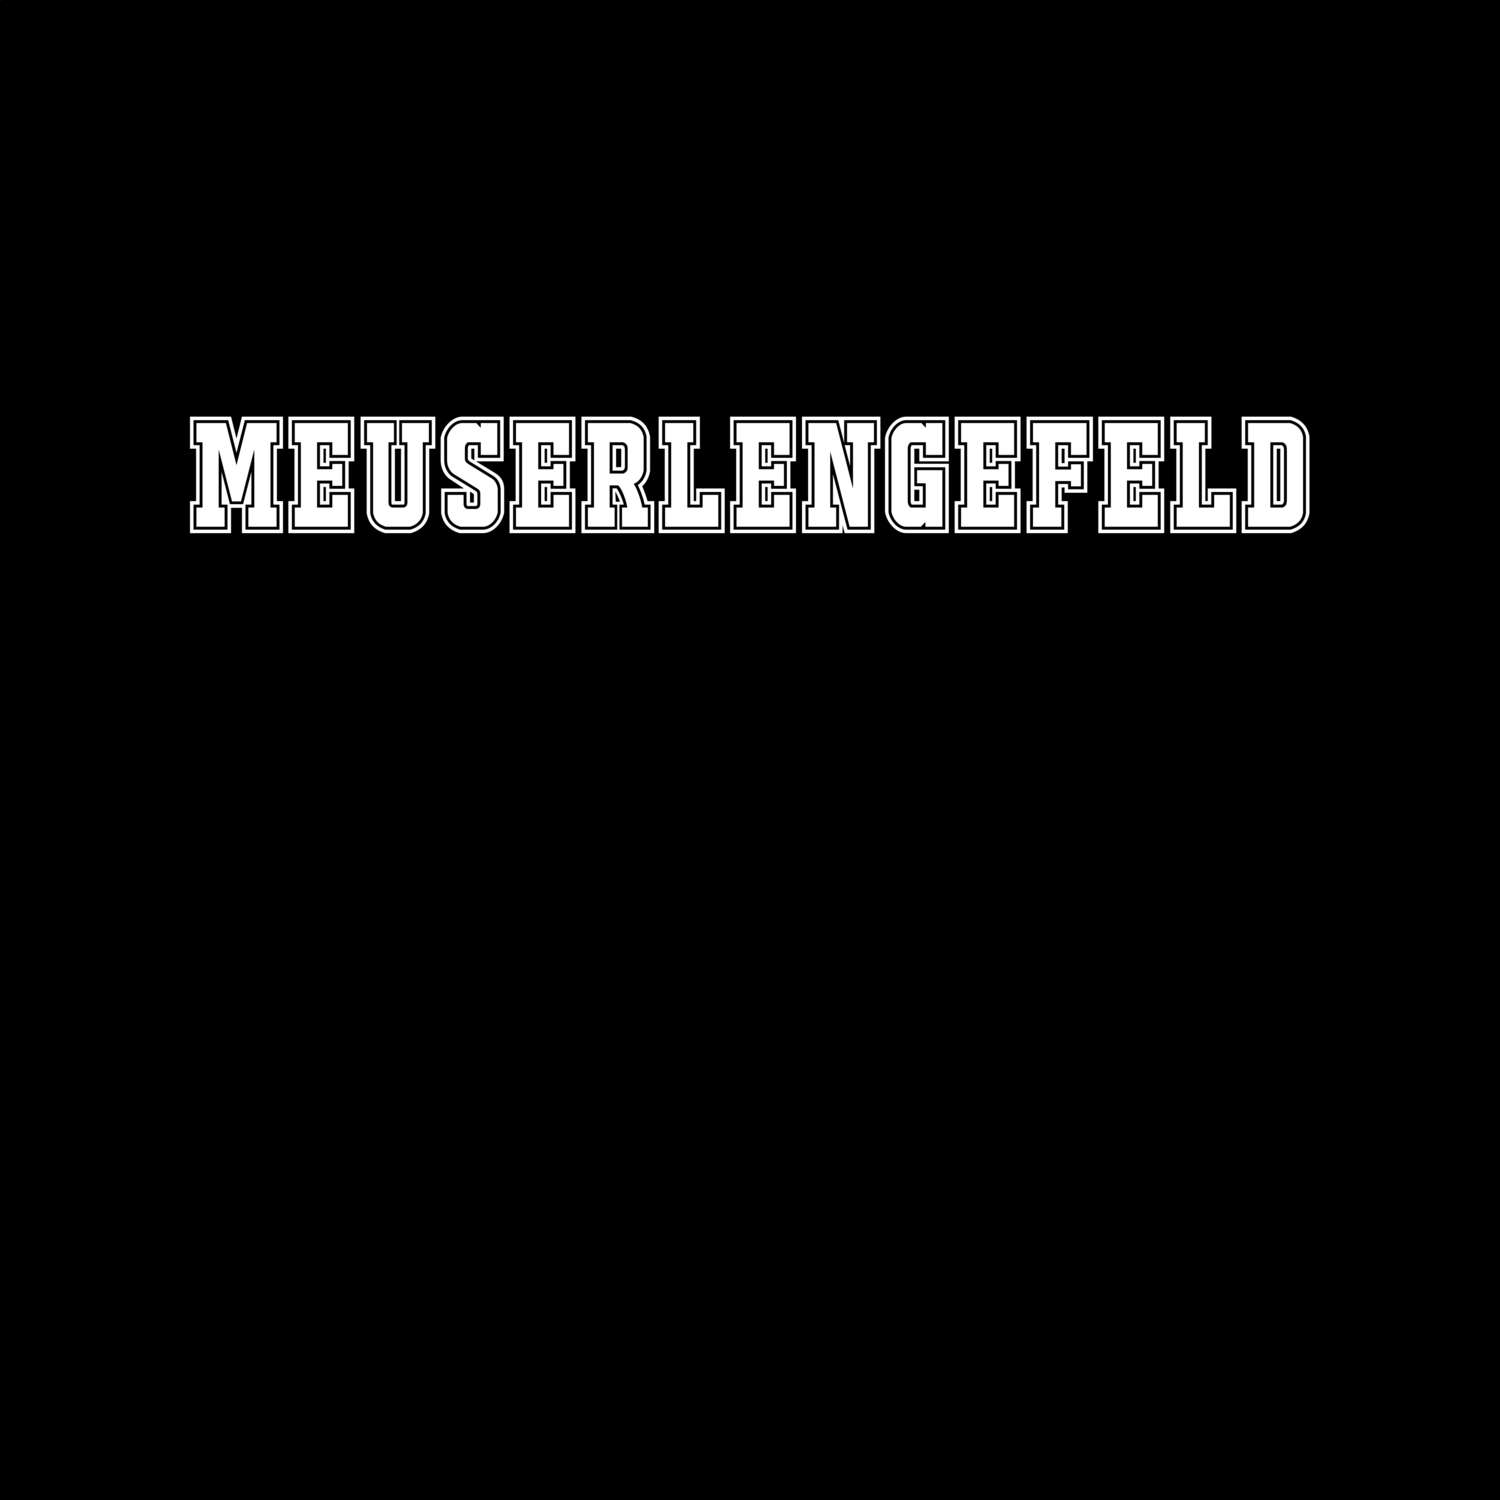 Meuserlengefeld T-Shirt »Classic«